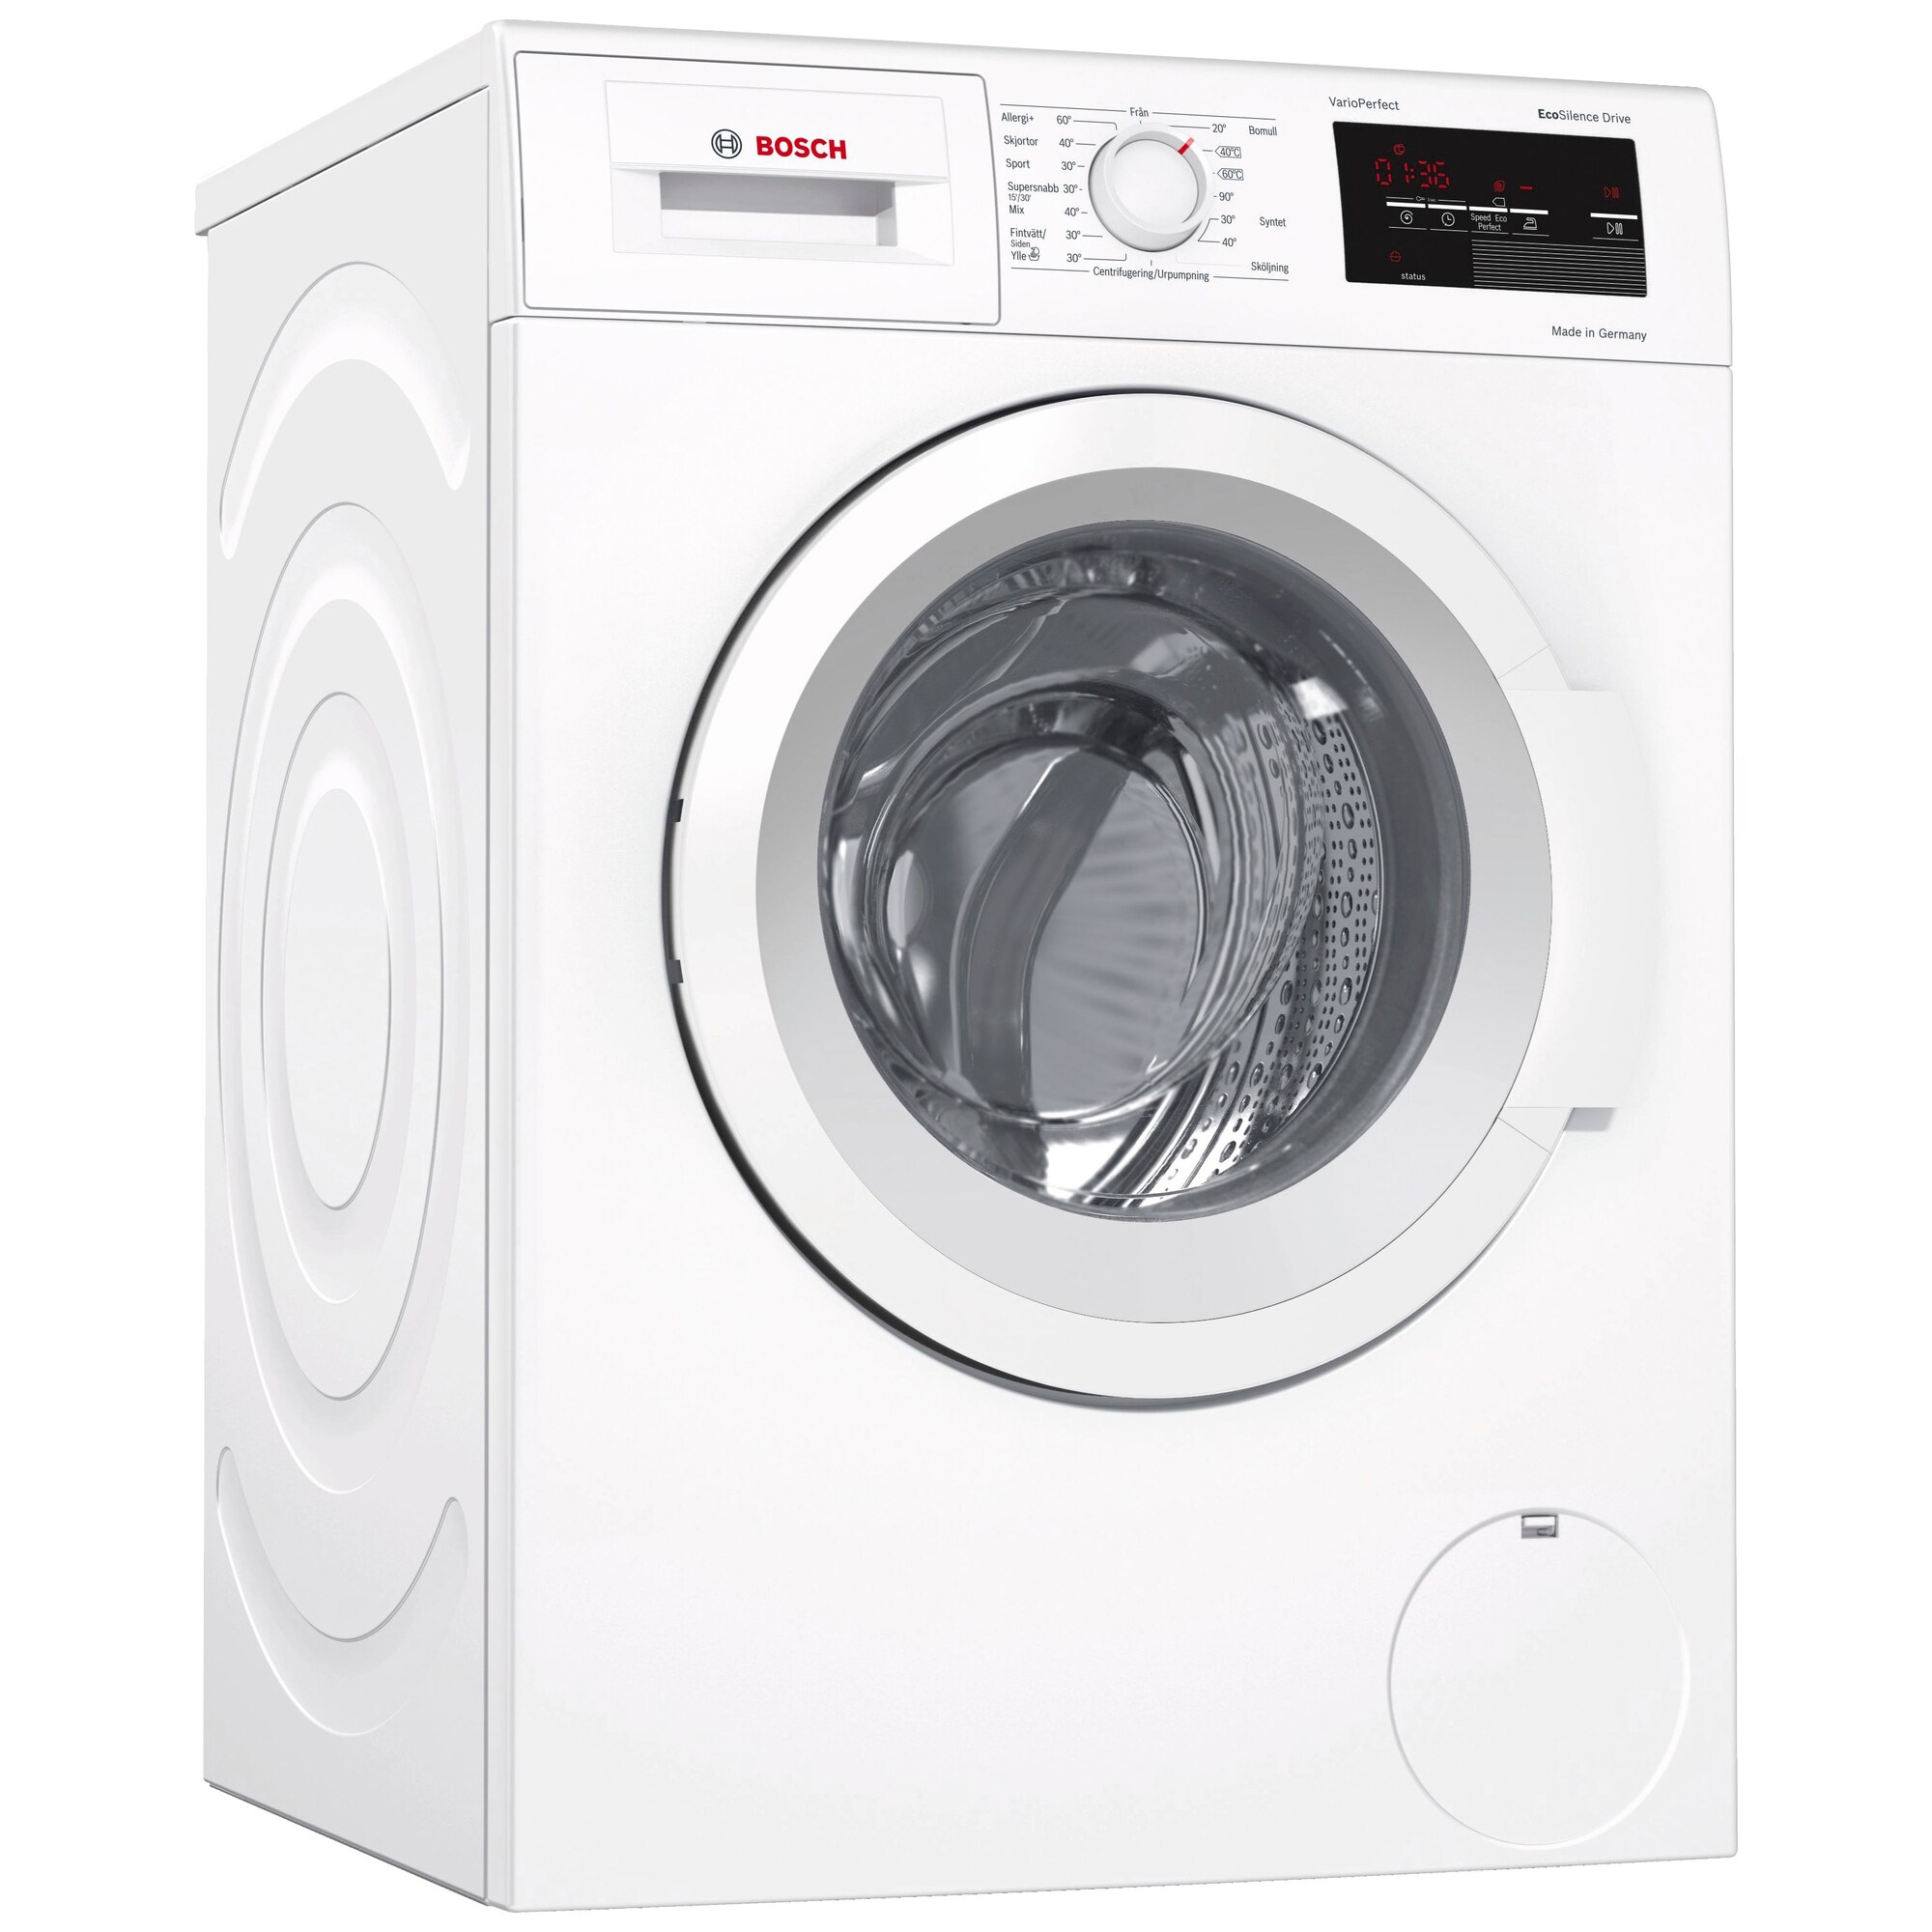 Vaskemaskine - Bedst i test til lav pris - Elgiganten